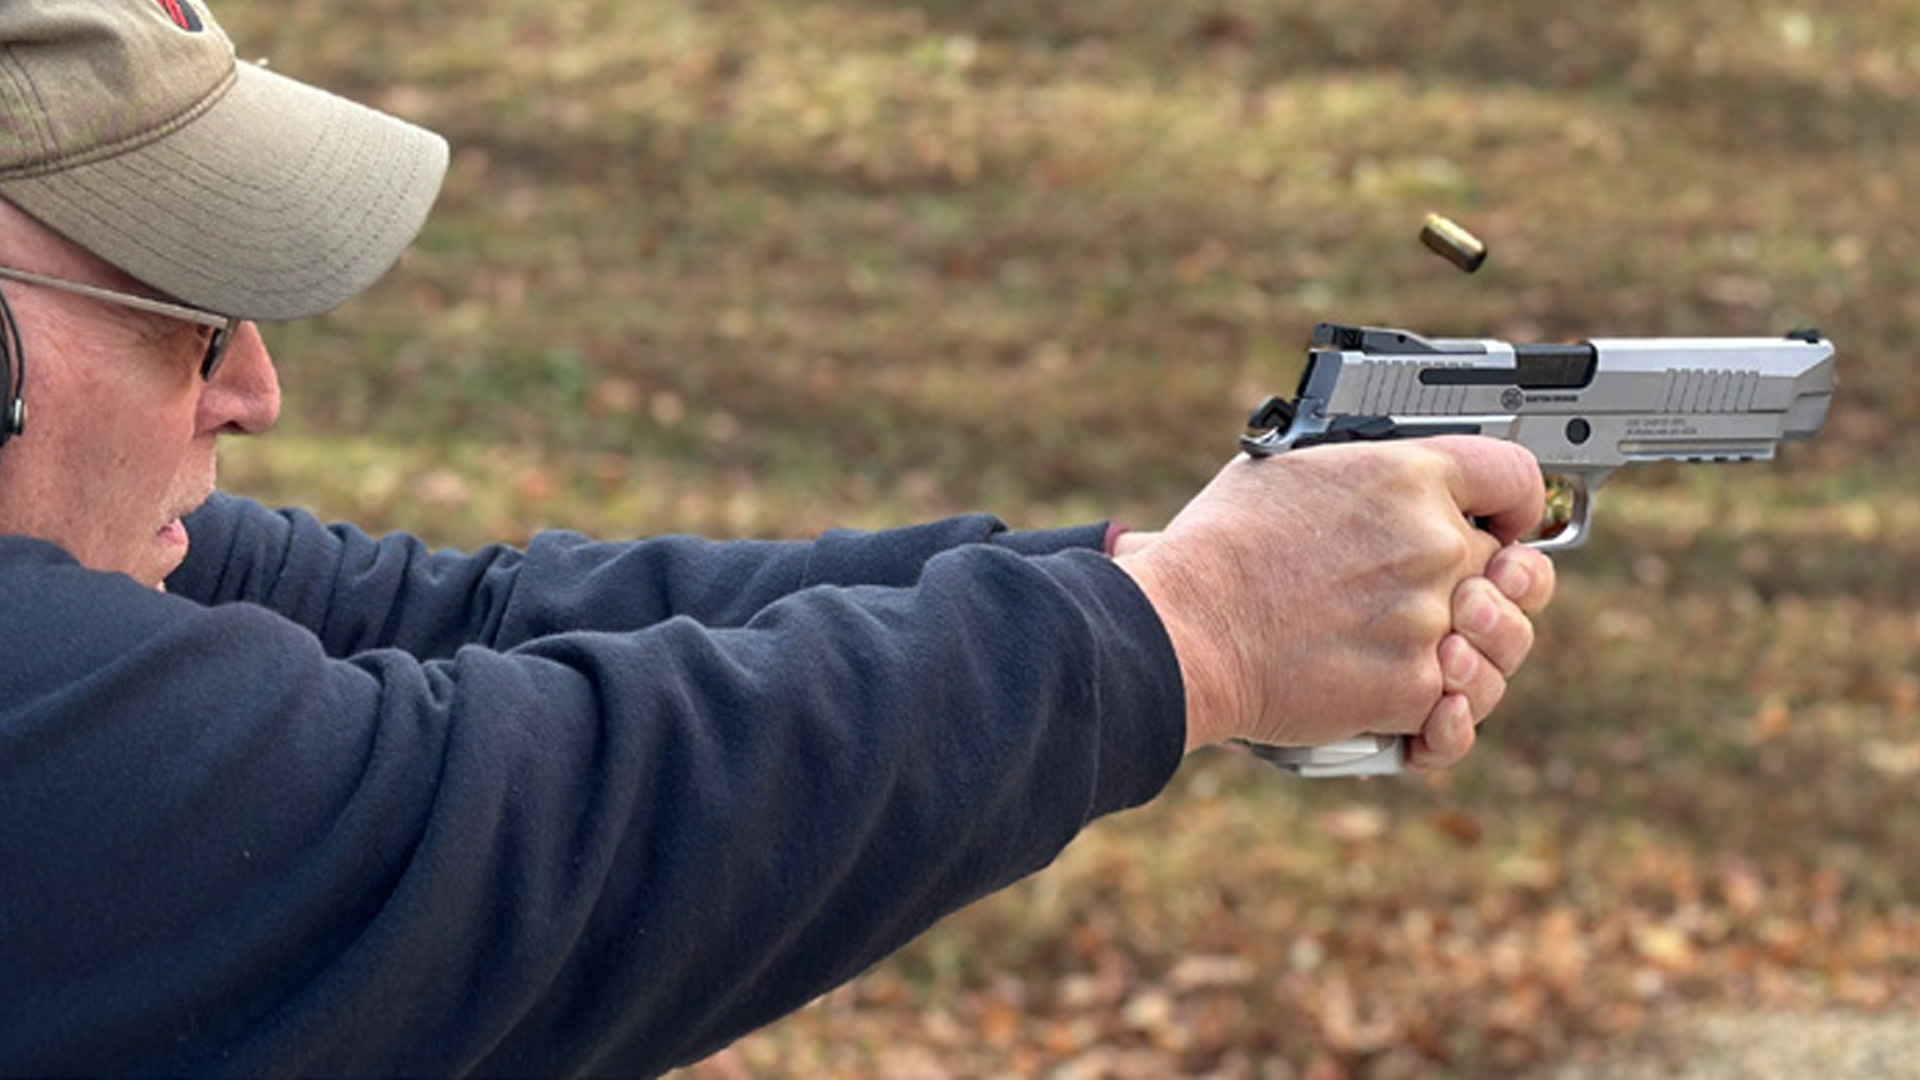 SIG Sauer P226 XFIVE 9mm pistol